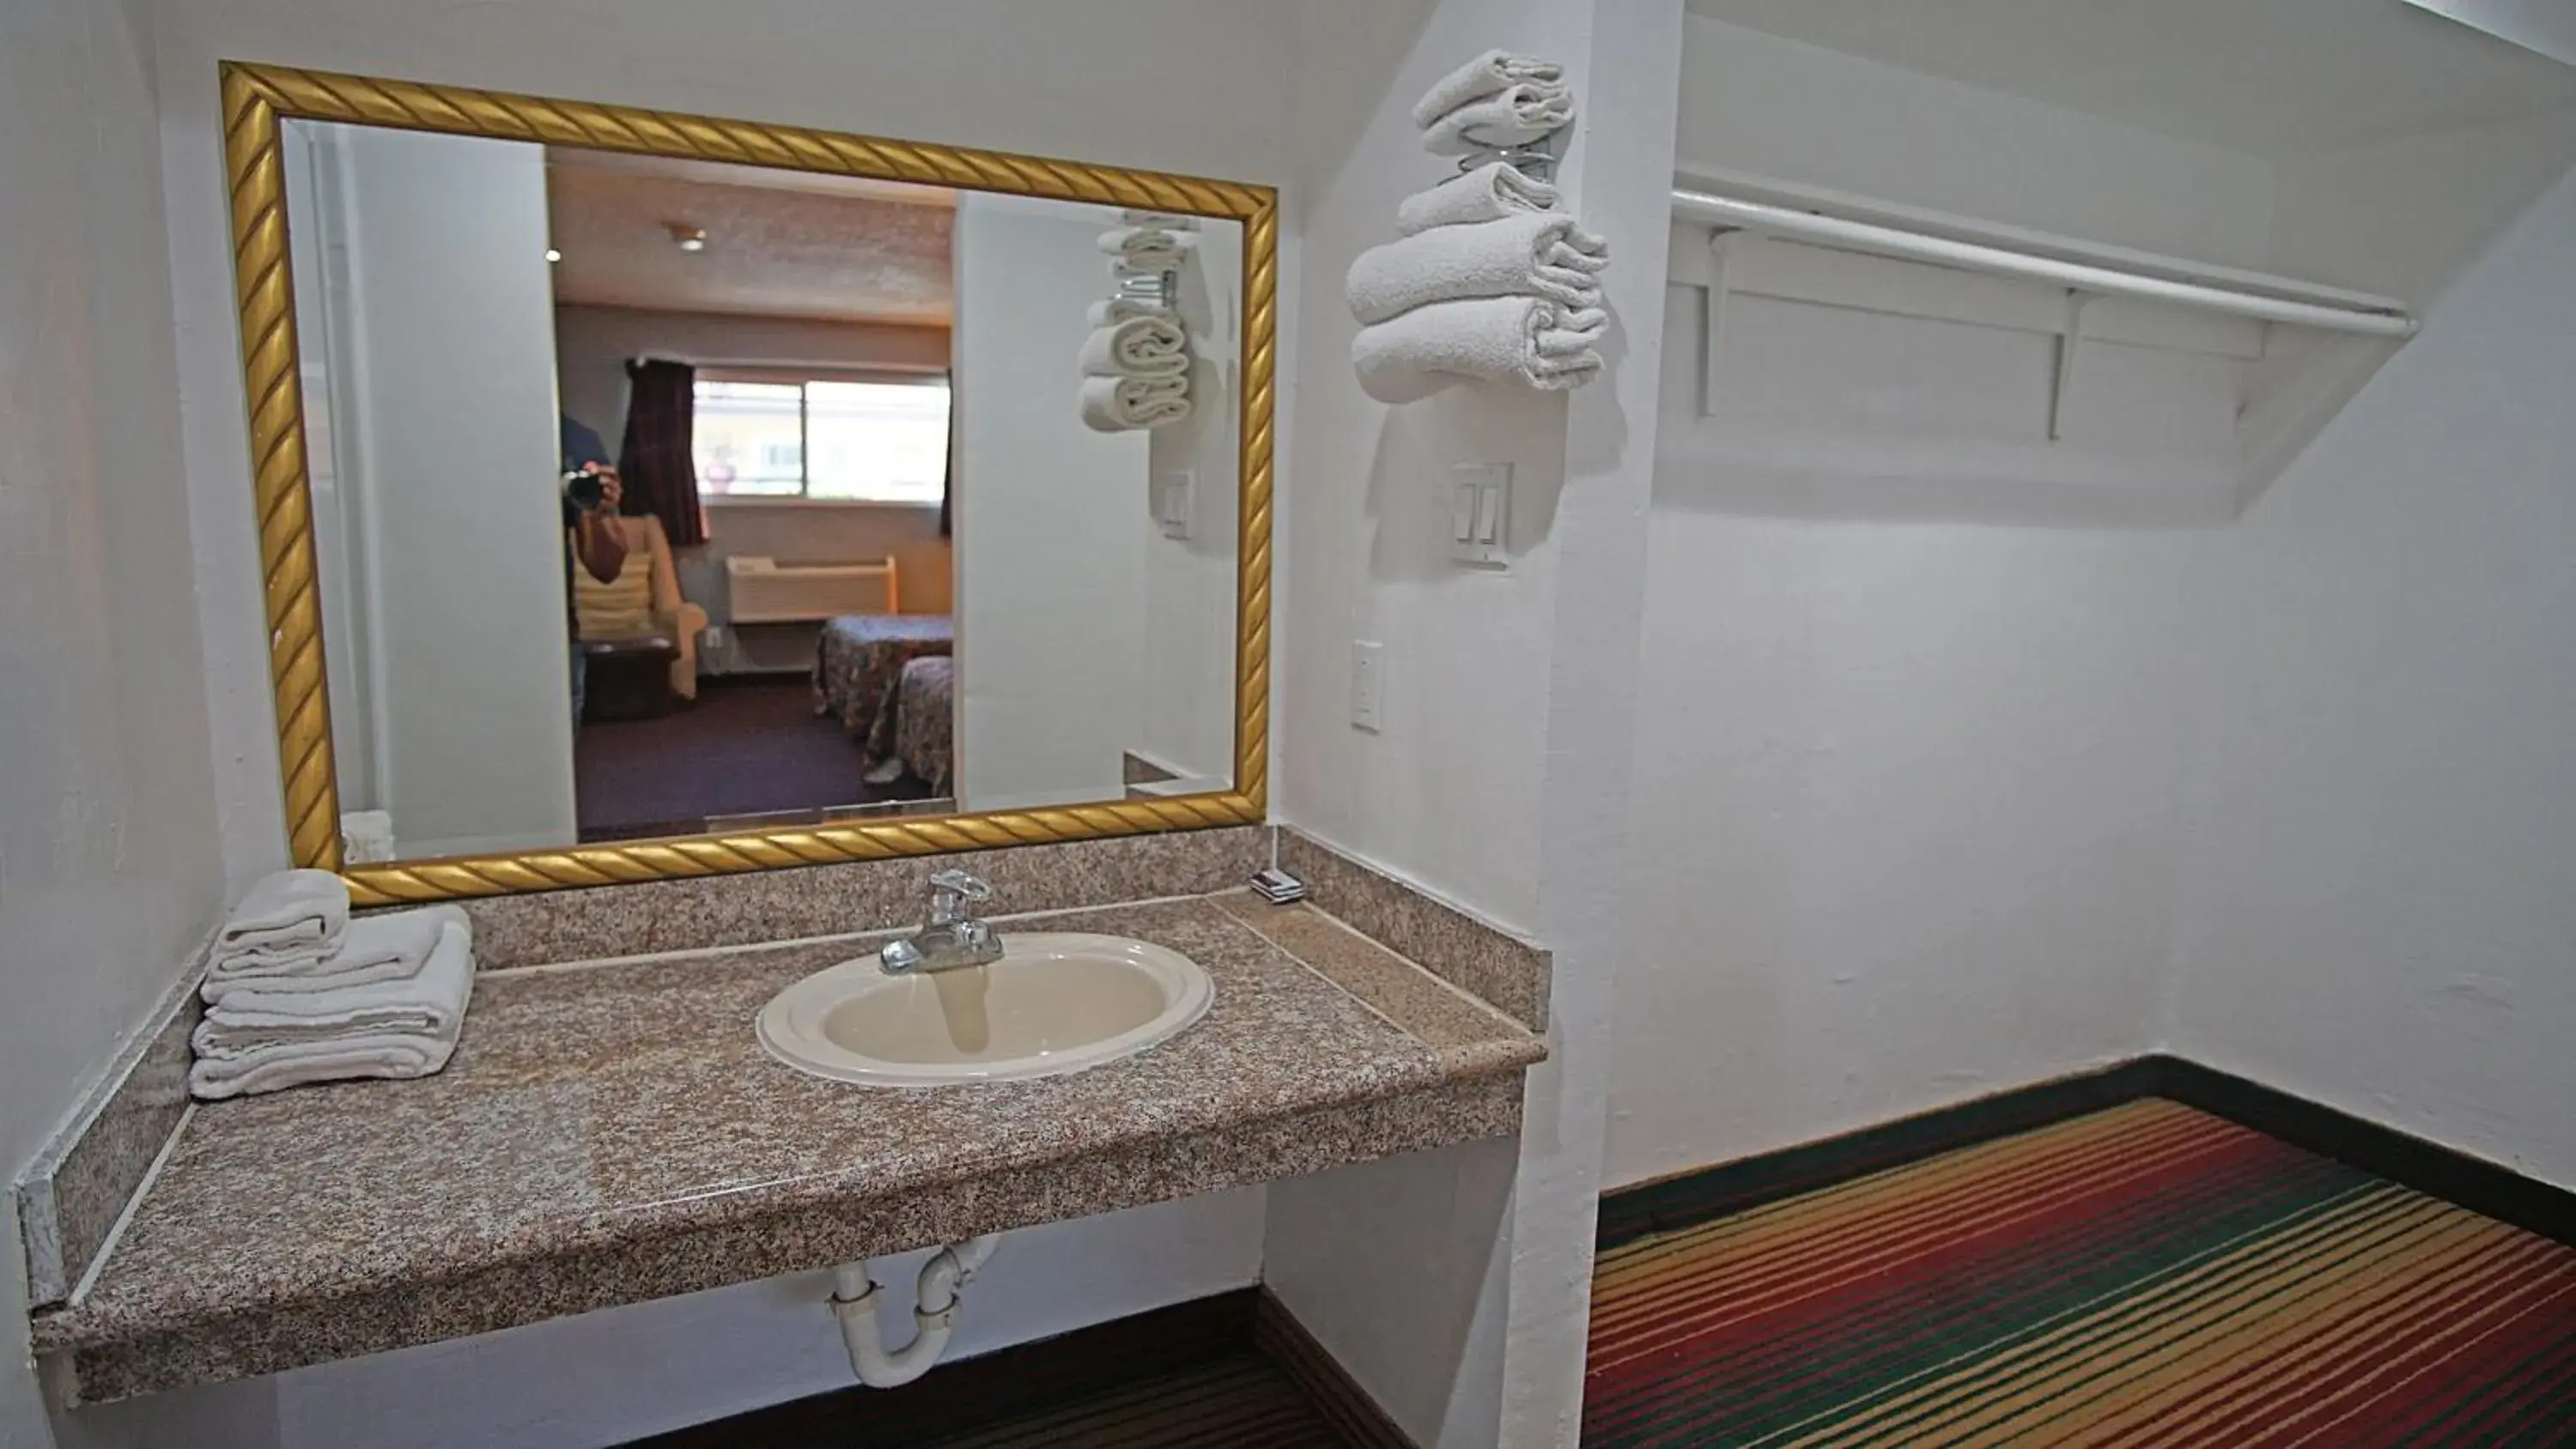 Bathroom in Los Angeles Inn & Suites - LAX